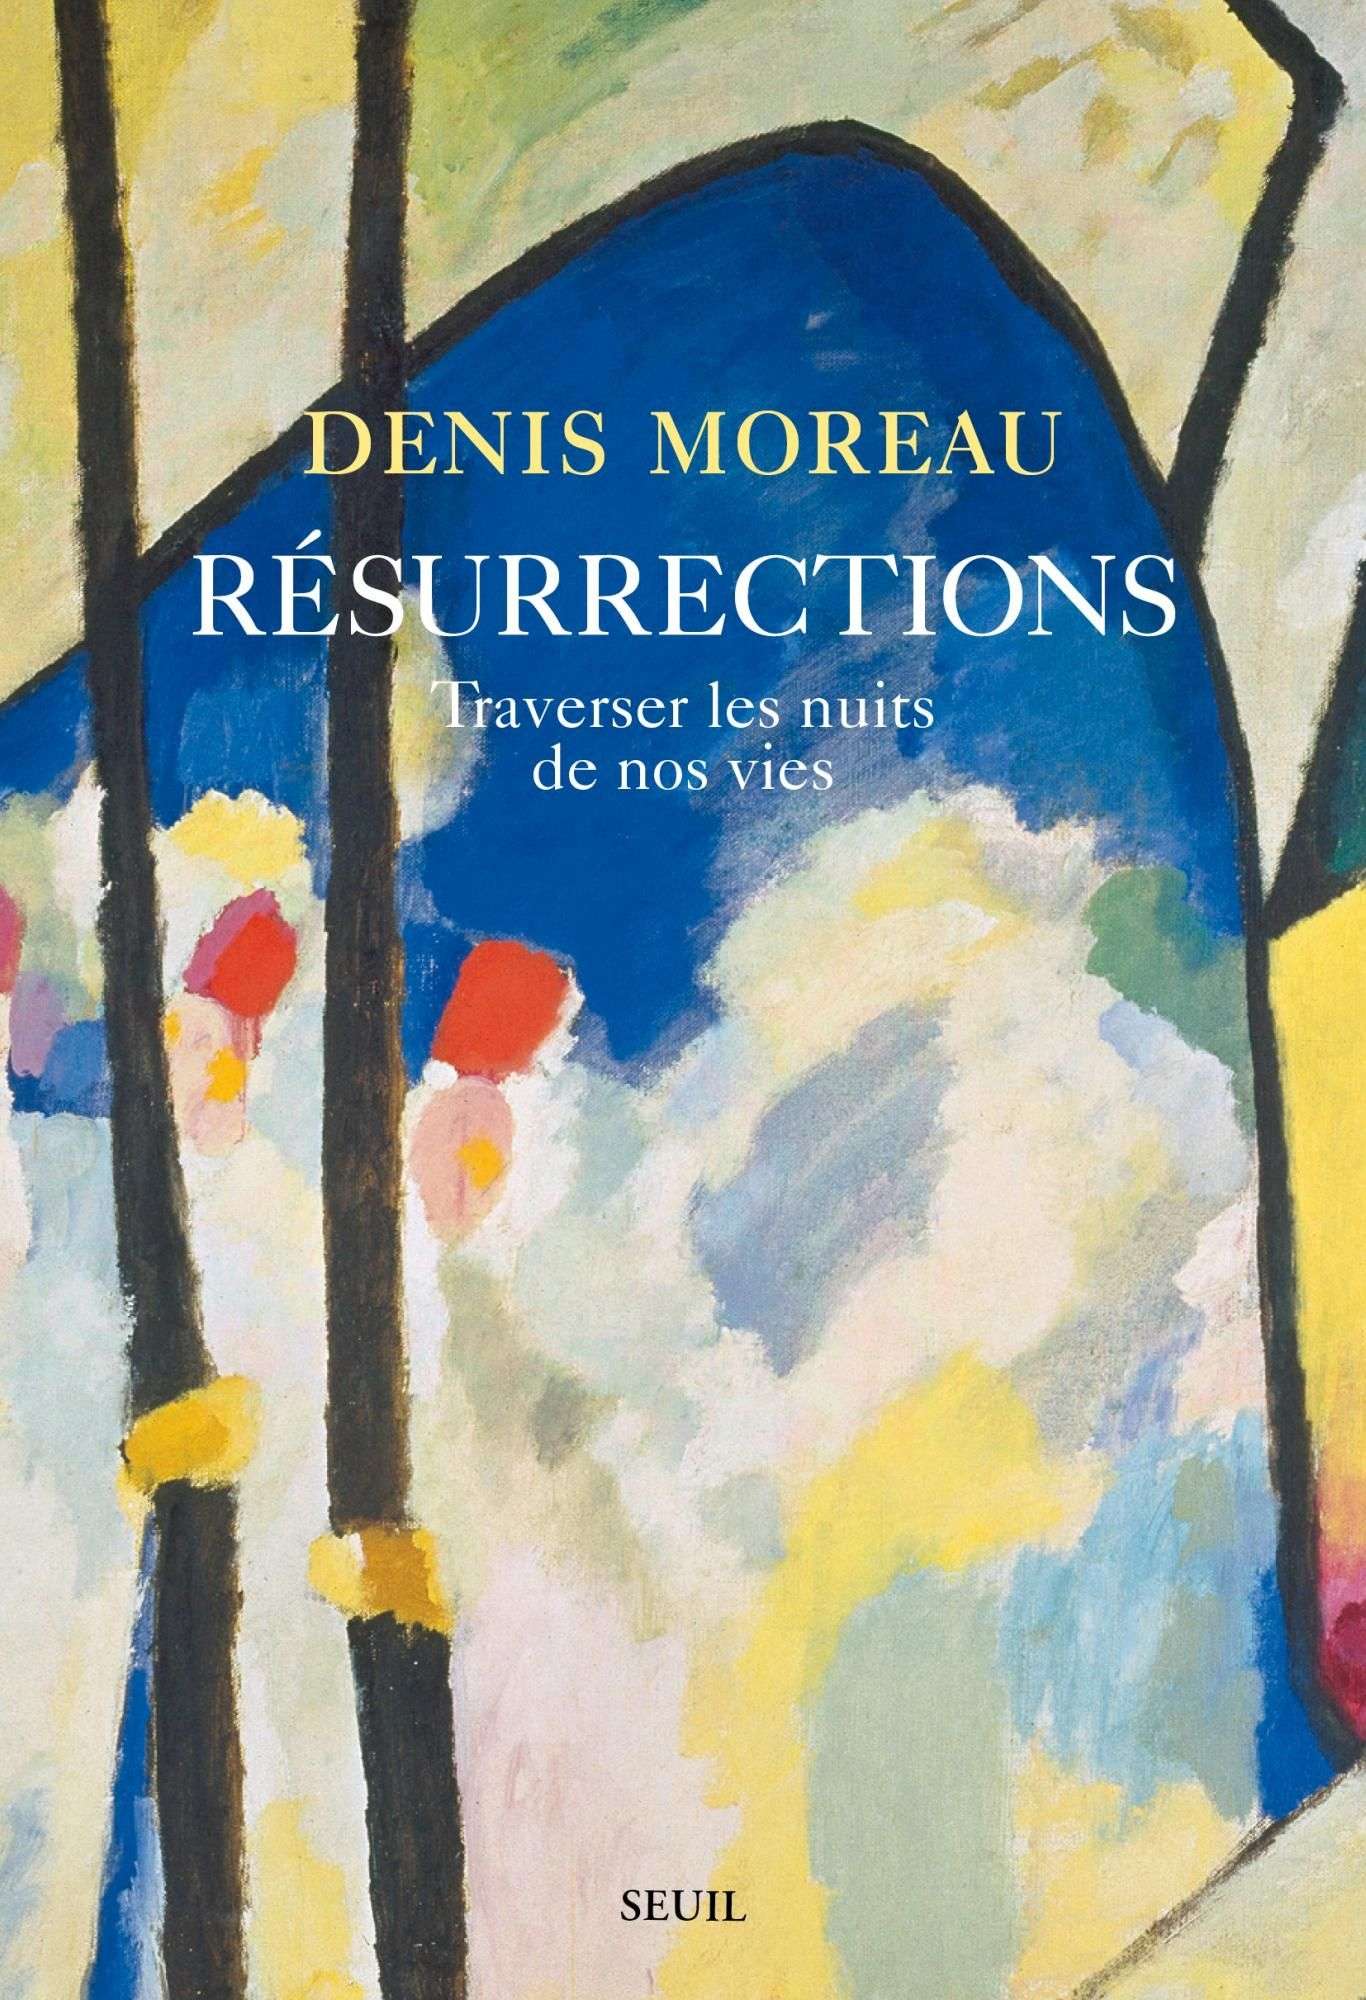 
Résurrections
Traverser les nuits de nos vies
Denis Moreau
